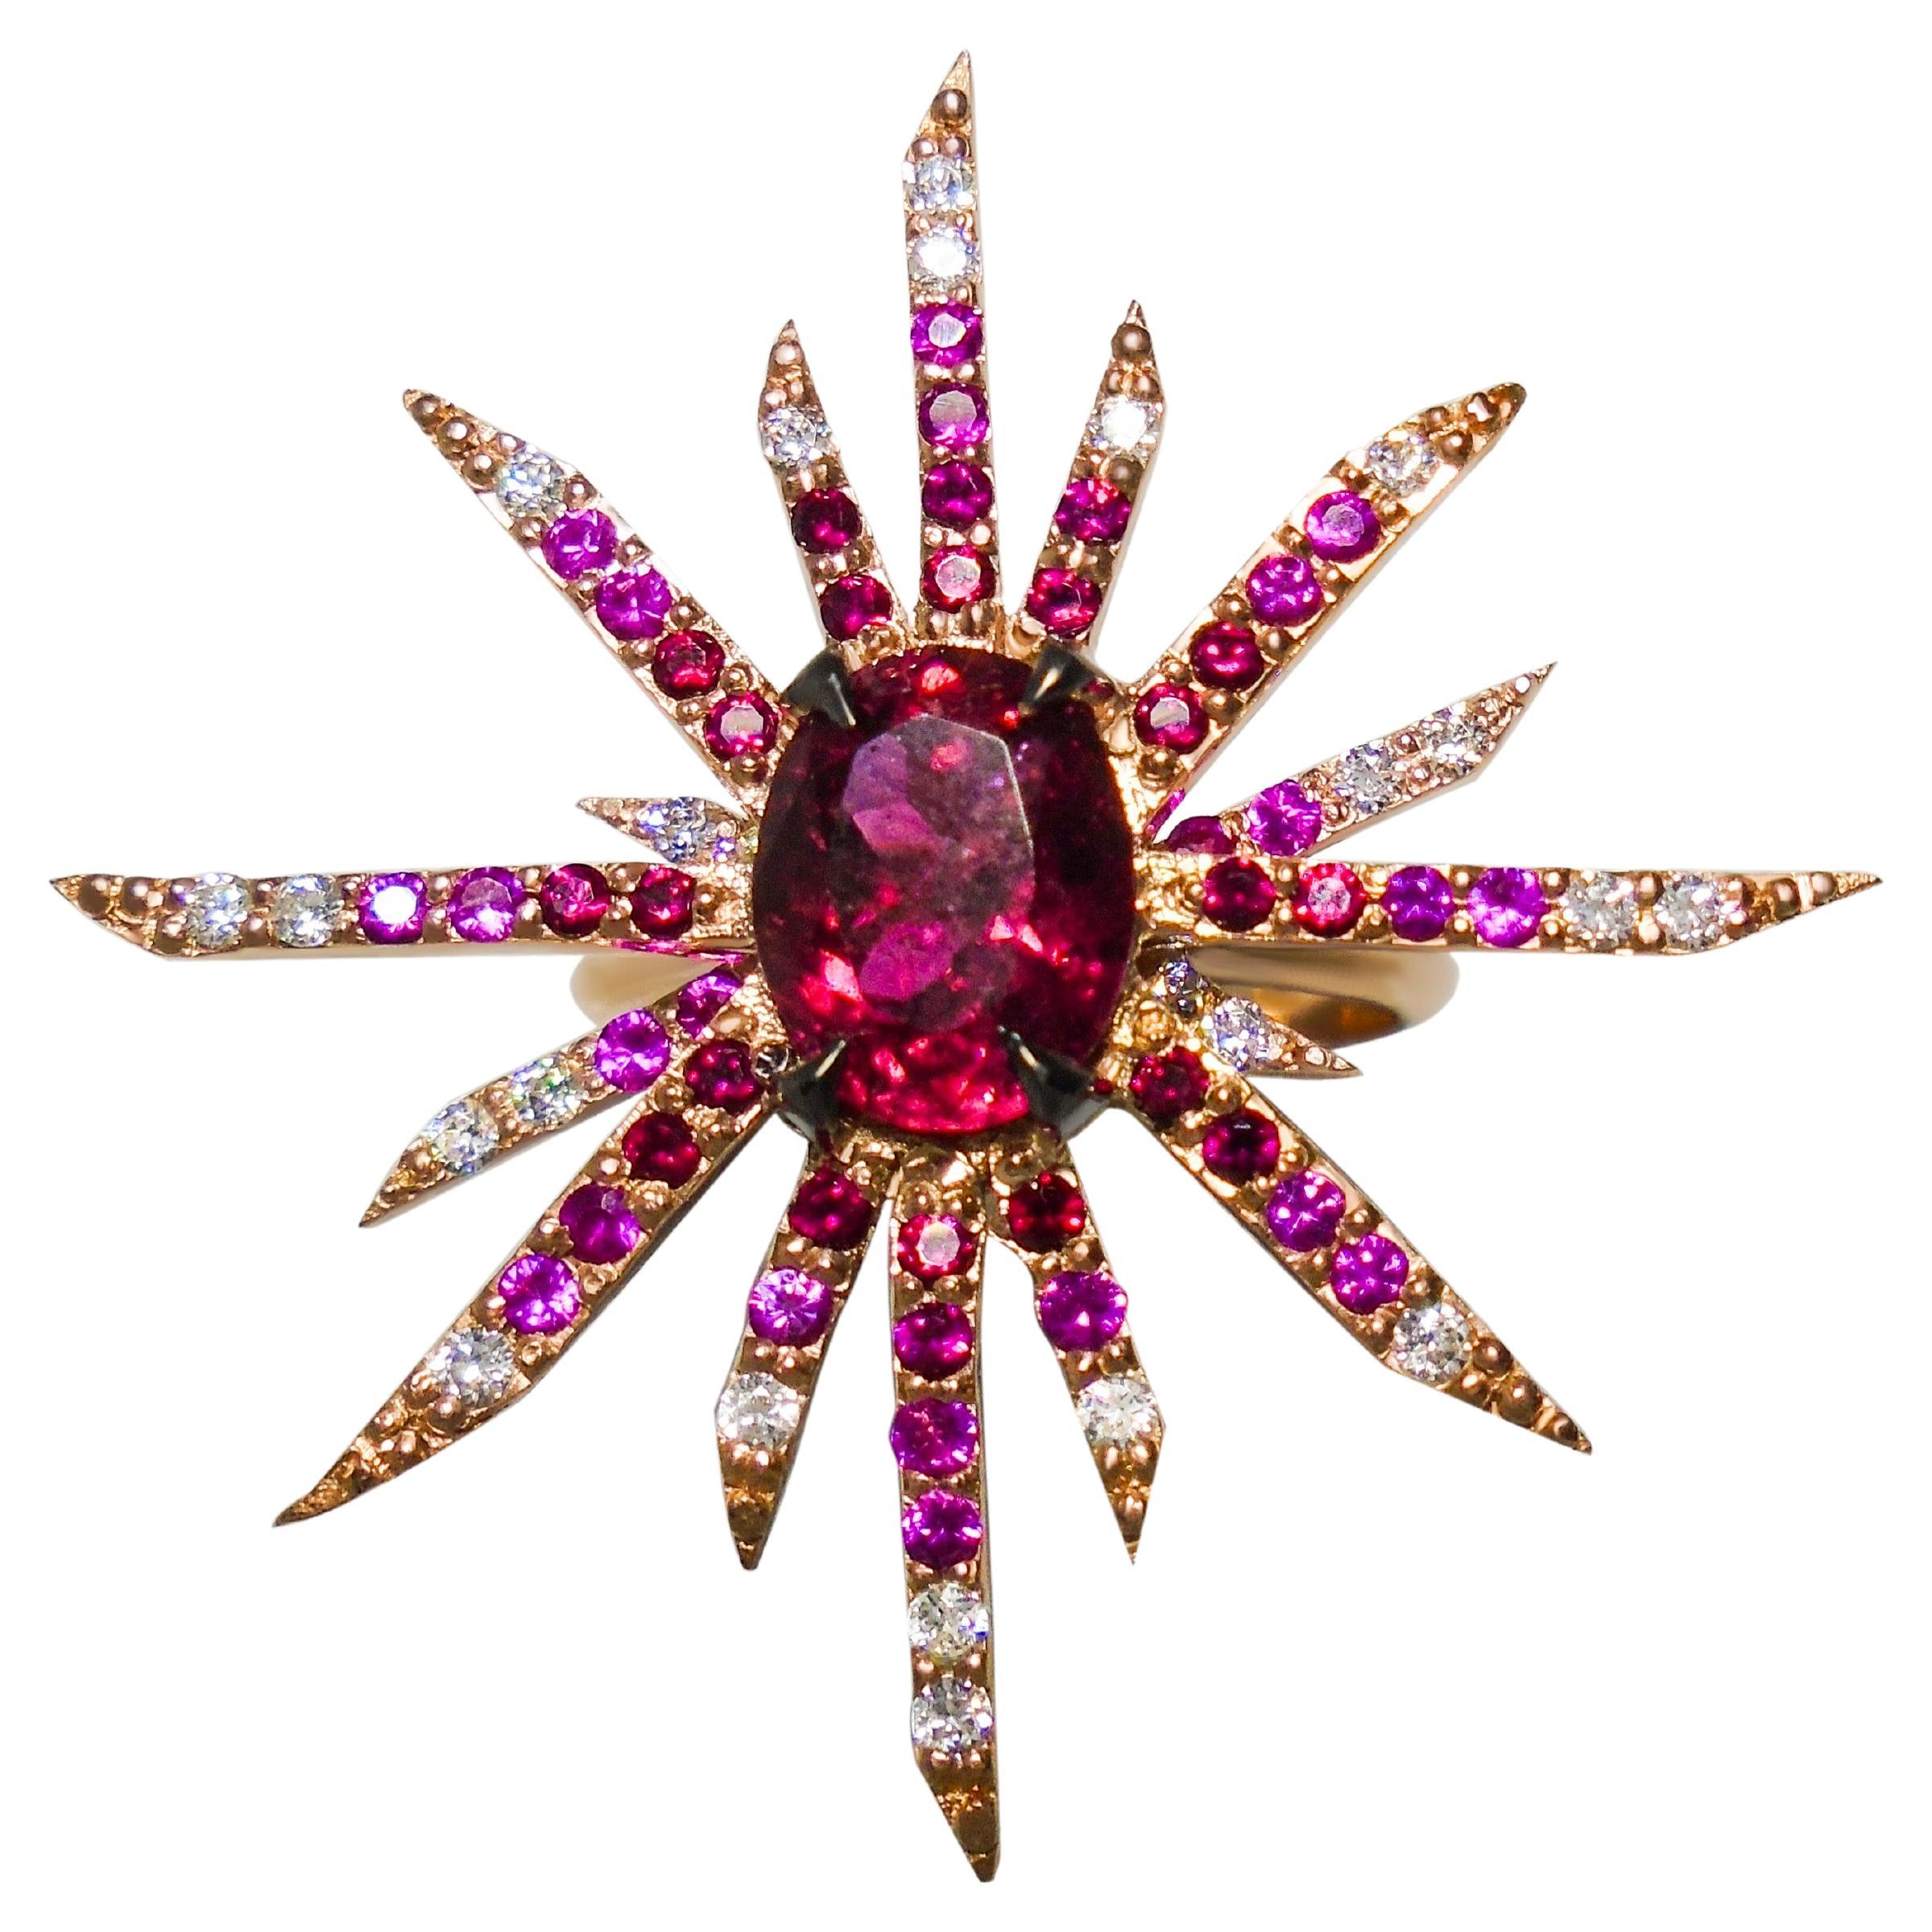 Rubin Supernova Roségold Ring mit Diamanten, Rubinen und heißen rosa Saphiren